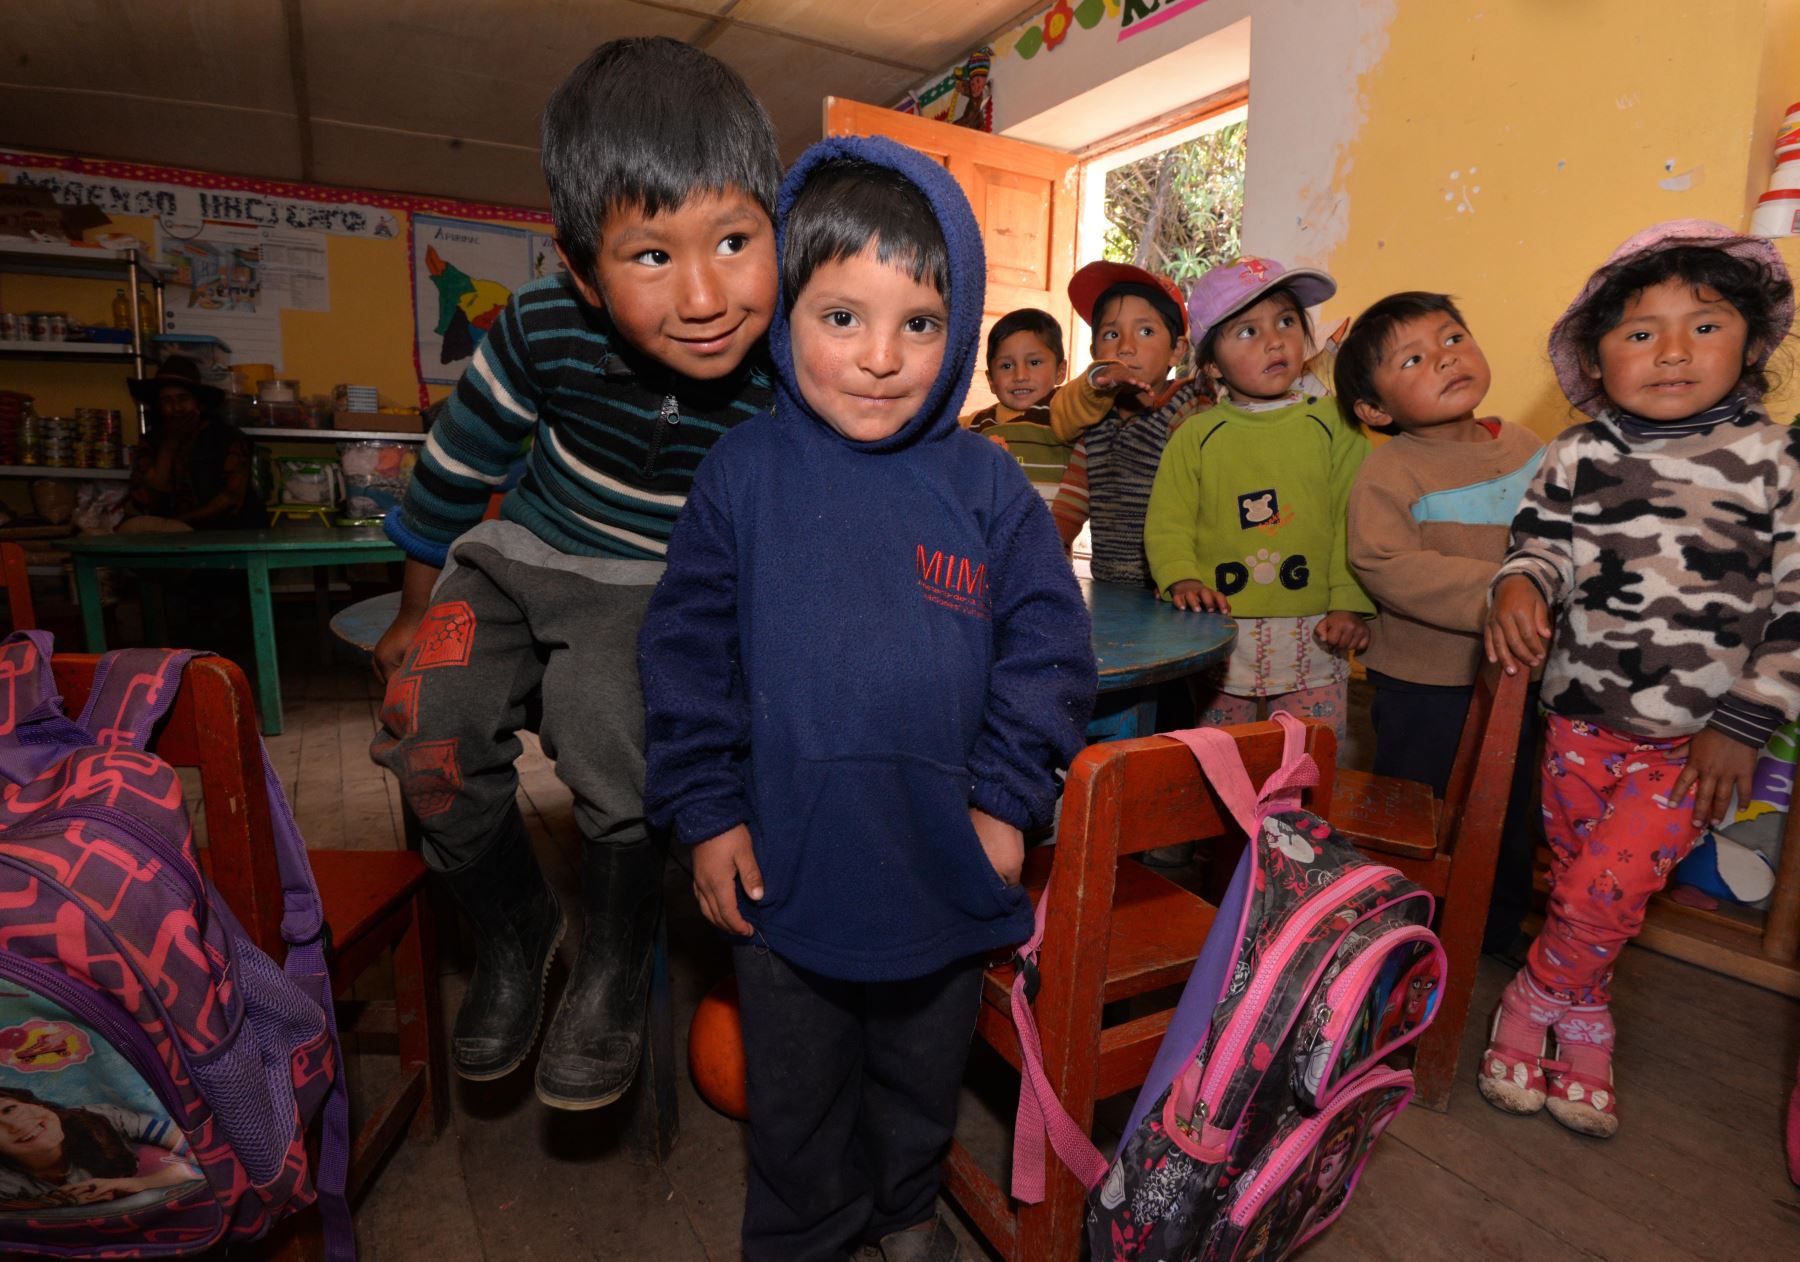 MIMP entrega más de 1,800 kits de abrigo a niños ante heladas. Foto: MIMP